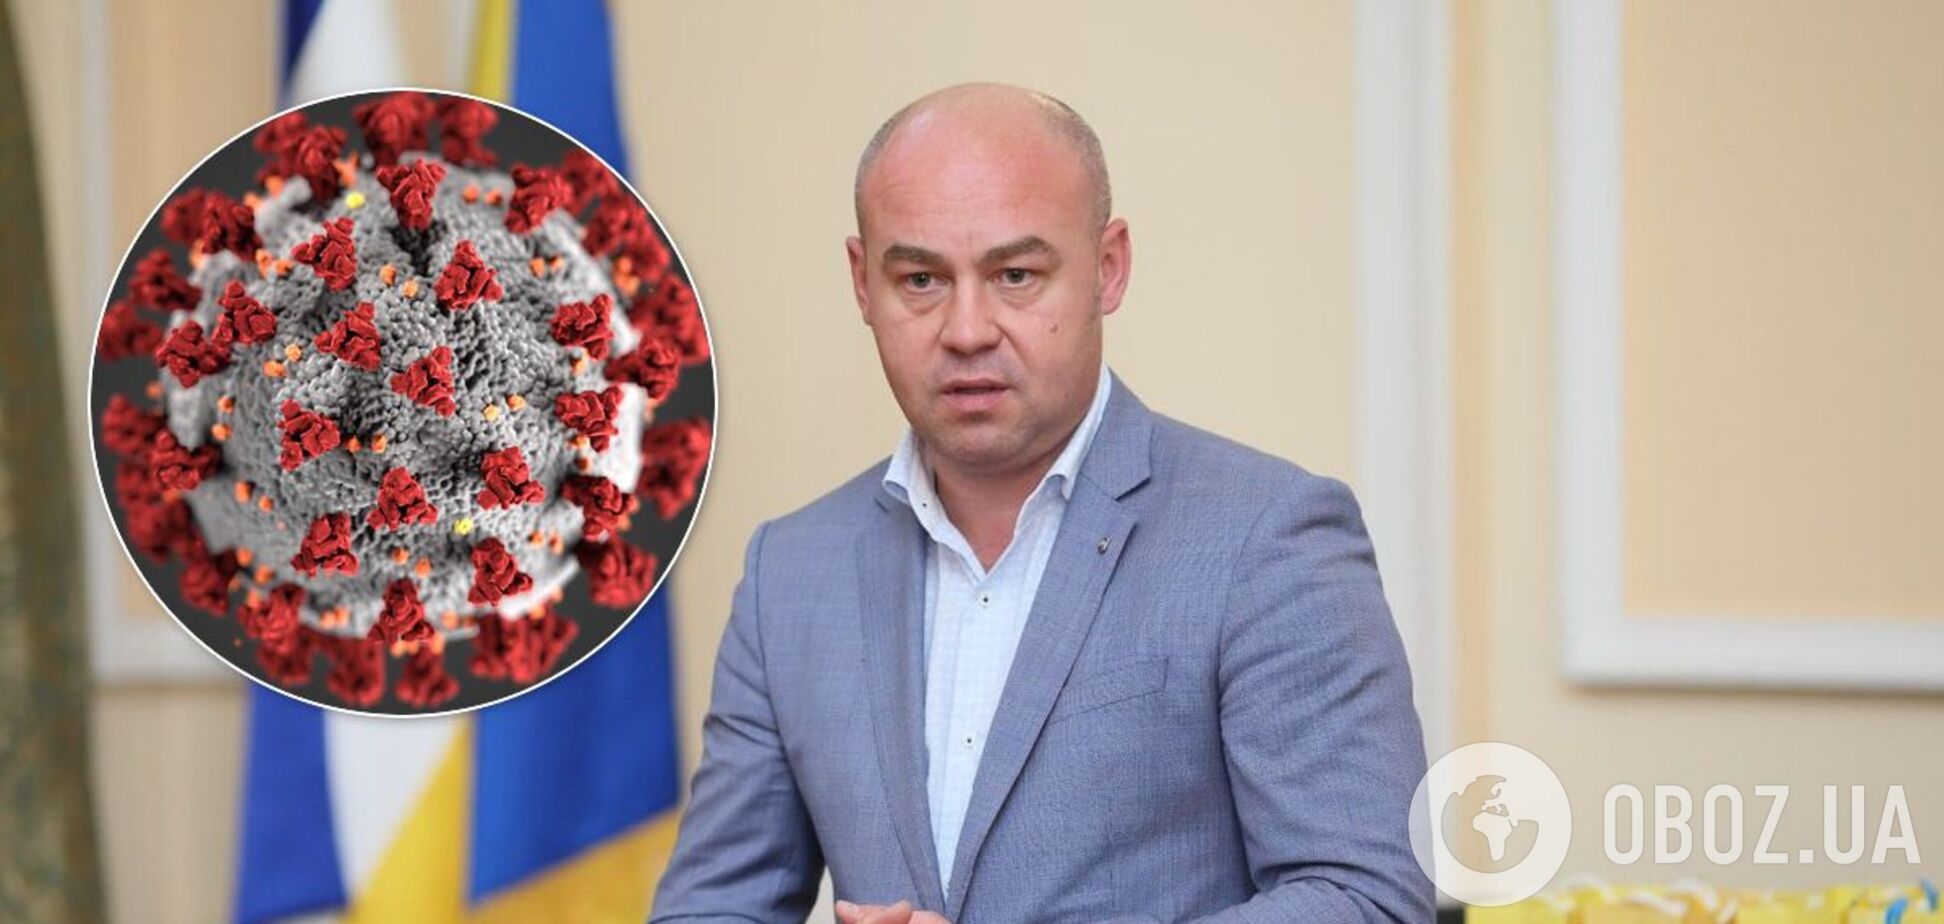 Мэр Тернополя заразился коронавирусом